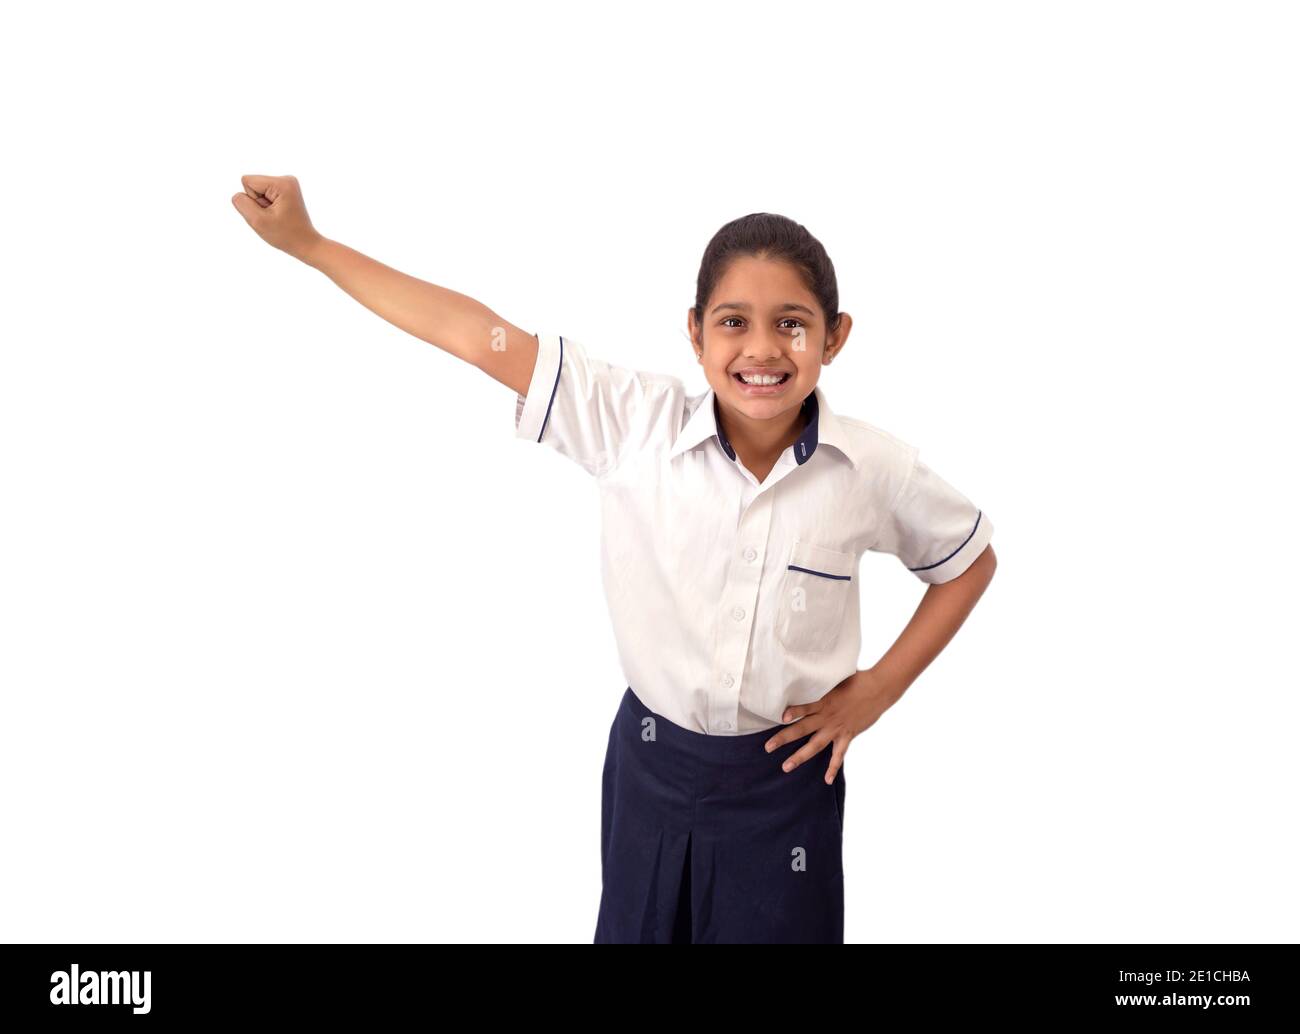 Ritratto di una ragazza indiana entusiasta, fiduciosa e sorridente in uniforme con braccio destro esteso raffigurante il successo e la vittoria Foto Stock